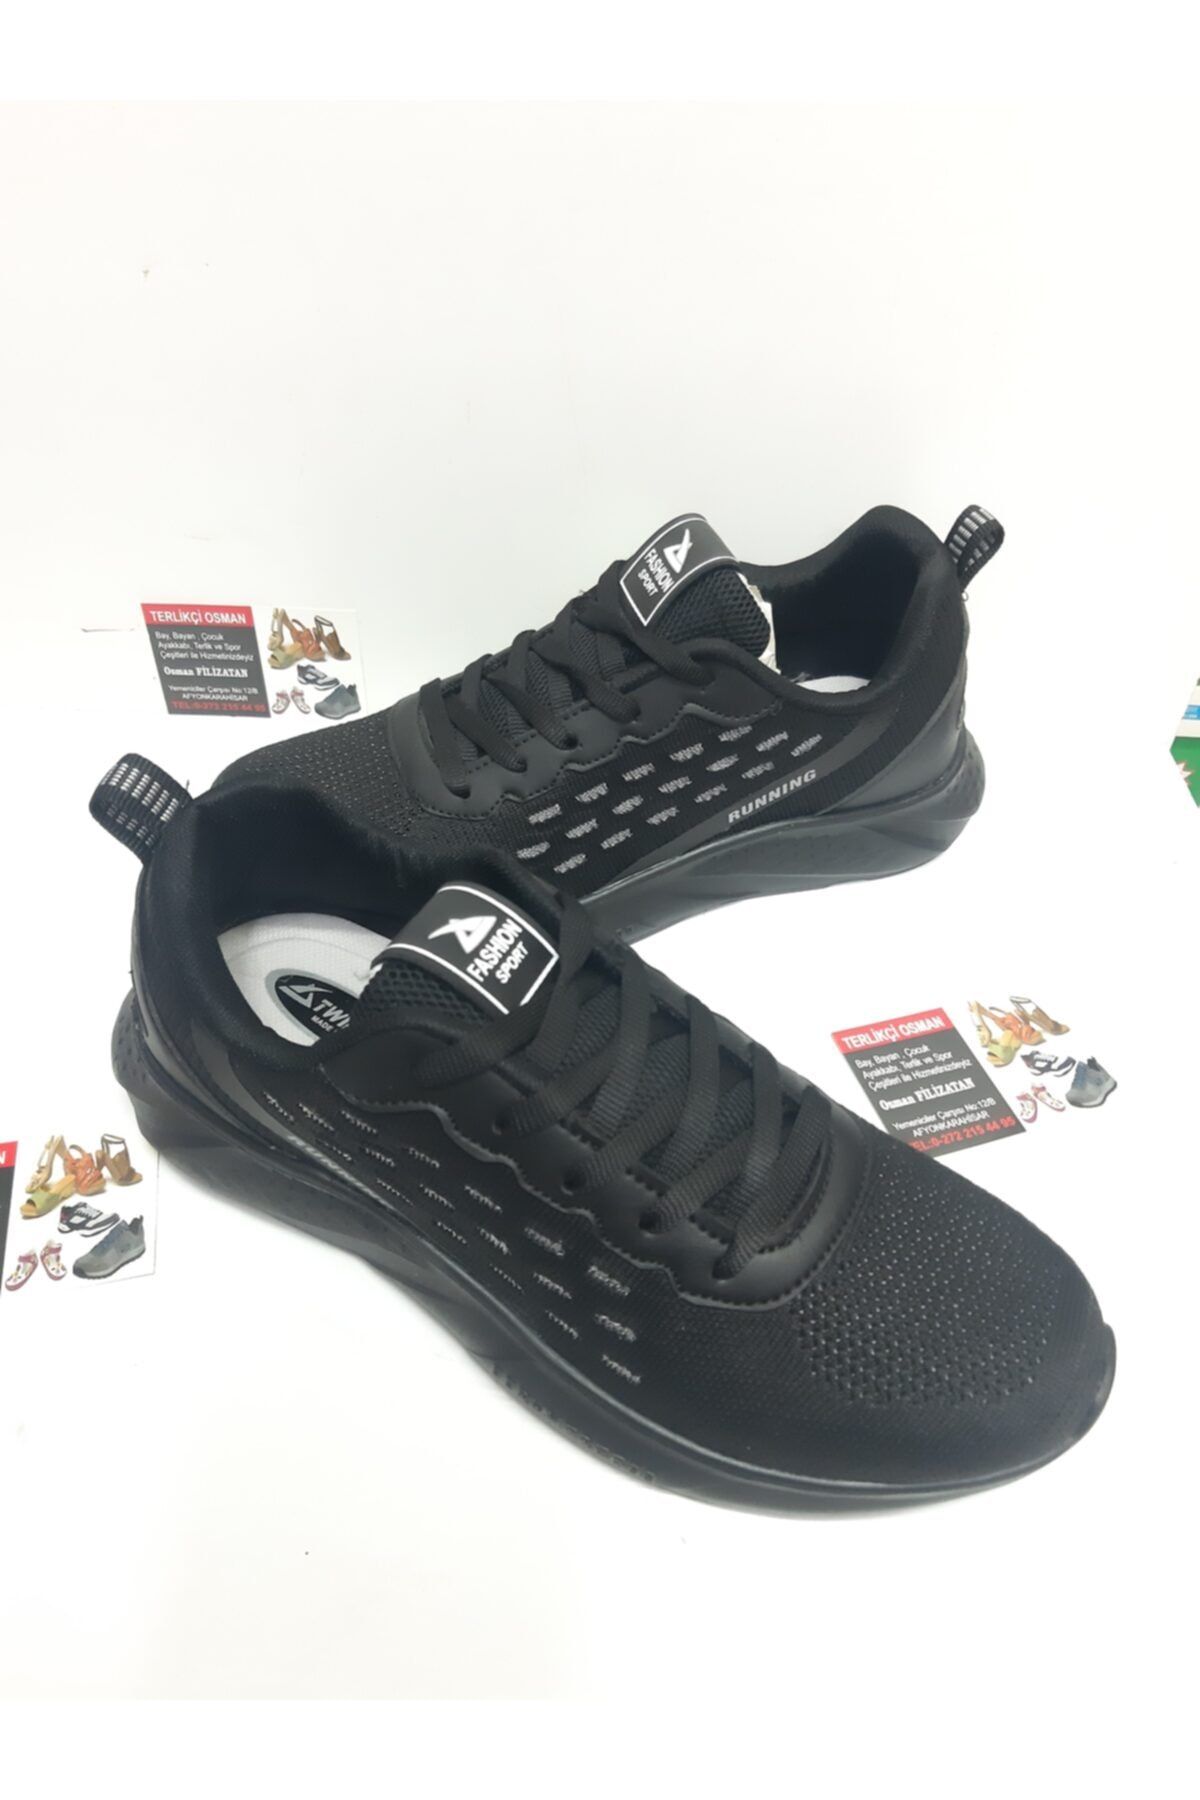 Twingo Unisex Spor Ayakkabı Yeni Ürün Günlük Kullanıma Uygun Tam Ortapedik Şık Görünüm